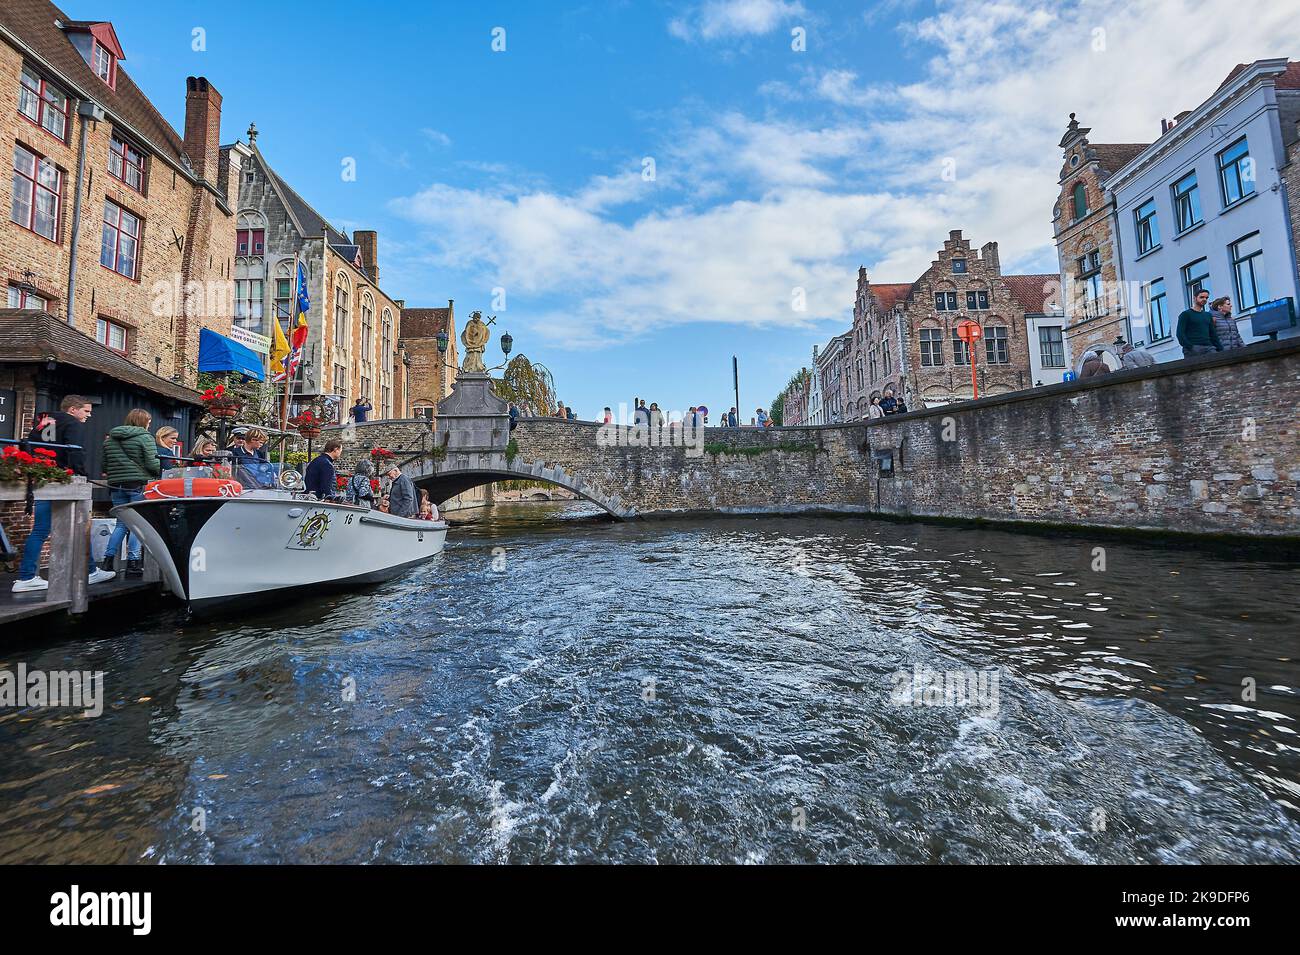 Brujas (Brujas) en Flandes, Bélgica y barcos turísticos operan en el canal Groenerei en el corazón de la ciudad histórica. Foto de stock